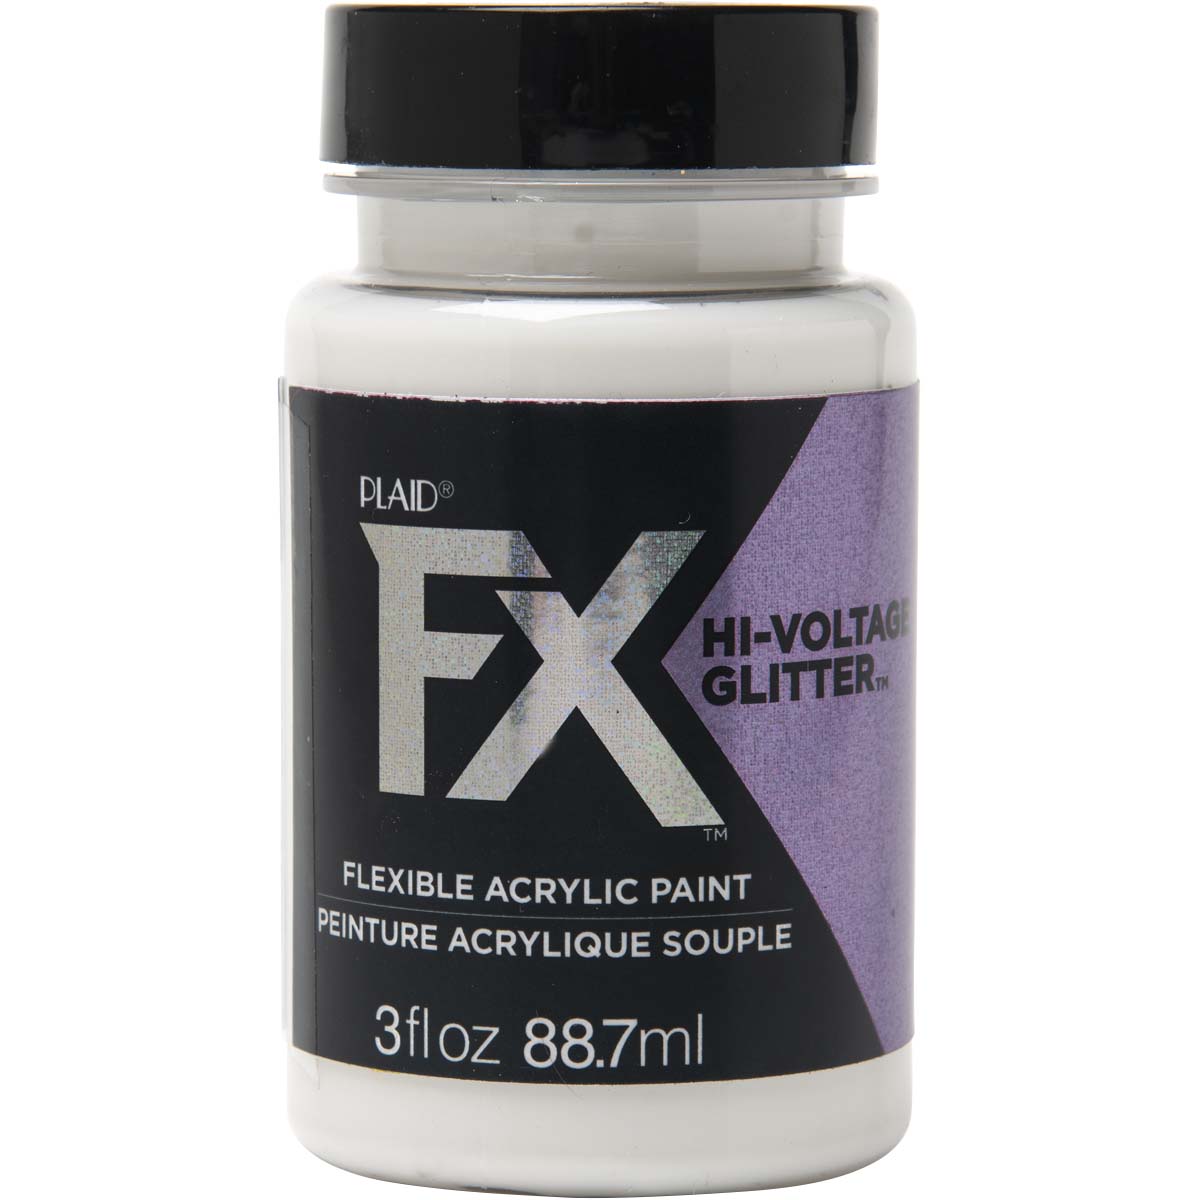 PlaidFX Hi-Voltage Glitter Flexible Acrylic Paint - Violet Shift, 3 oz. - 36905